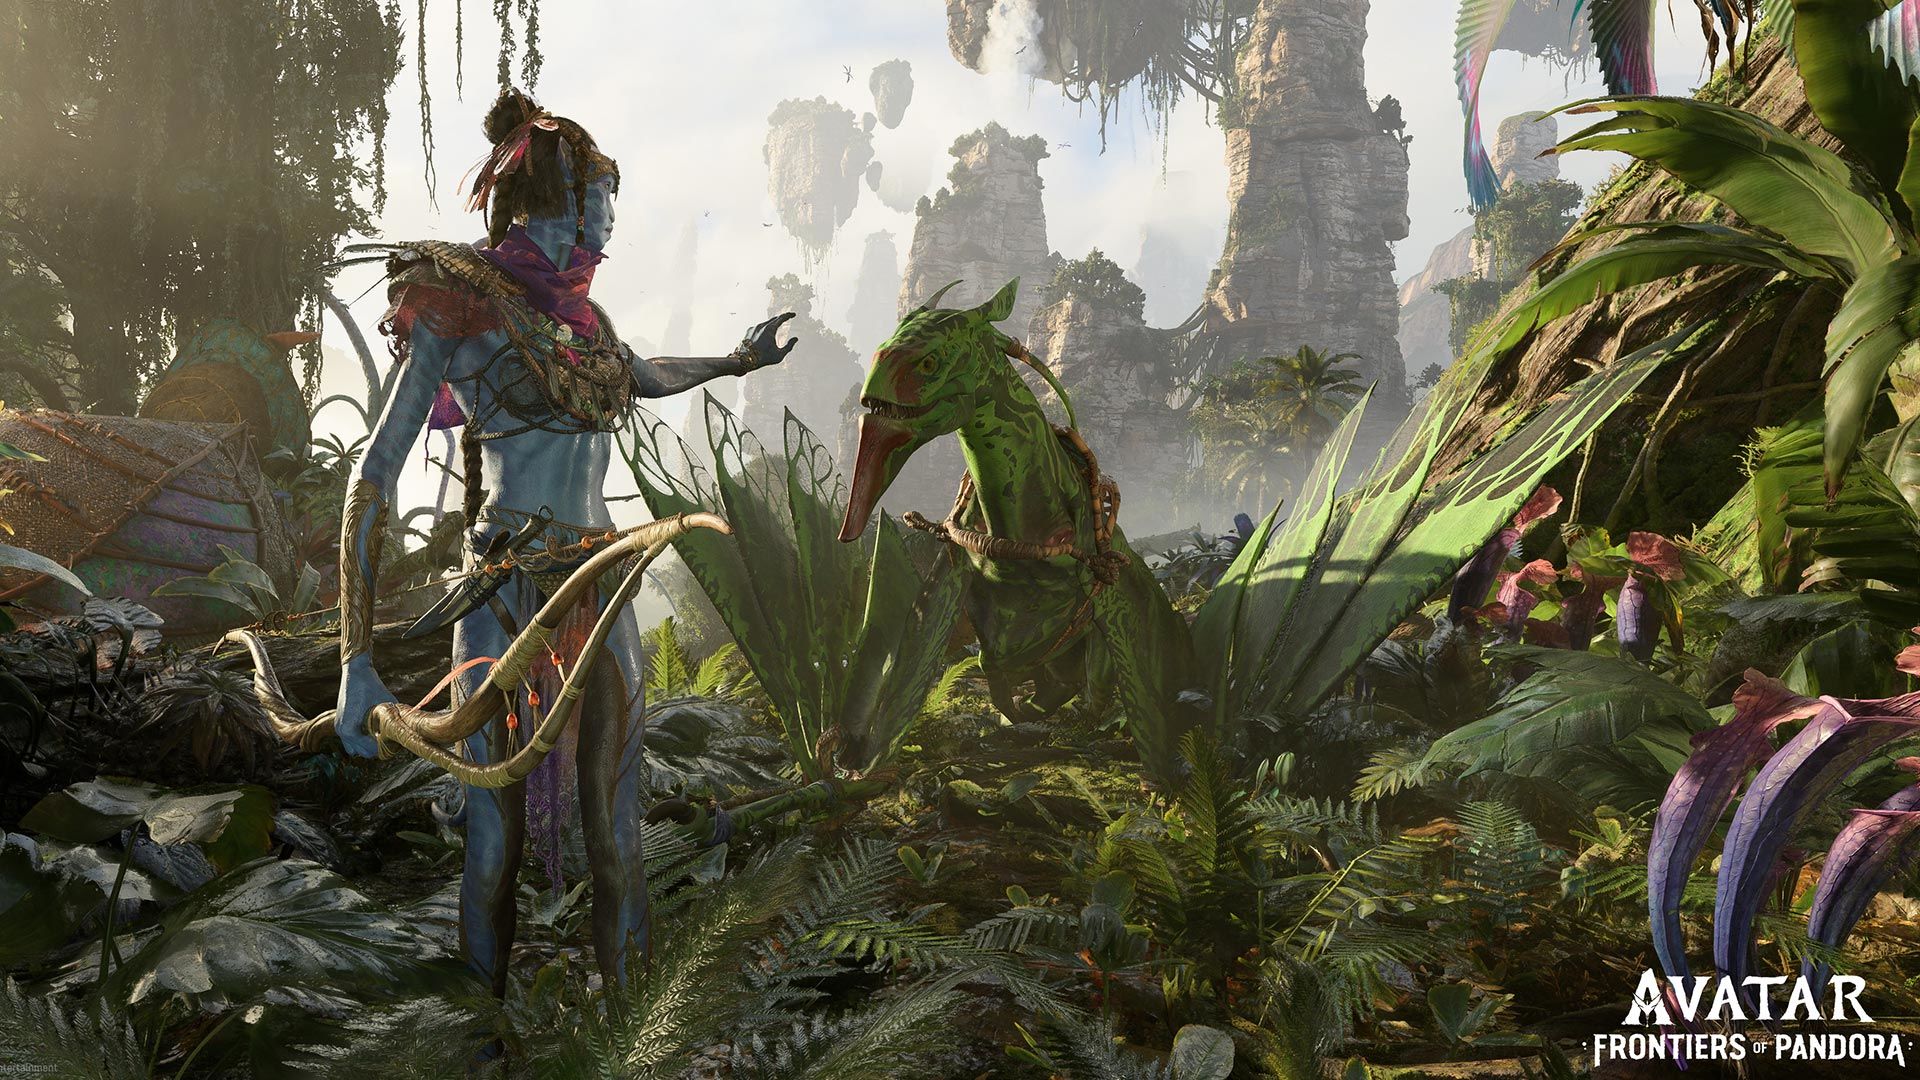 Avatar: Frontiers of Pandora game technology: Cùng trải nghiệm công nghệ mới nhất với trò chơi Avatar: Frontiers of Pandora – thu hút sự chú ý của người chơi với đồ họa đẹp mắt và công nghệ đột phá. Hãy sẵn sàng chiến đấu trong một thế giới đầy màu sắc và phát hiện những bí mật đằng sau đó.